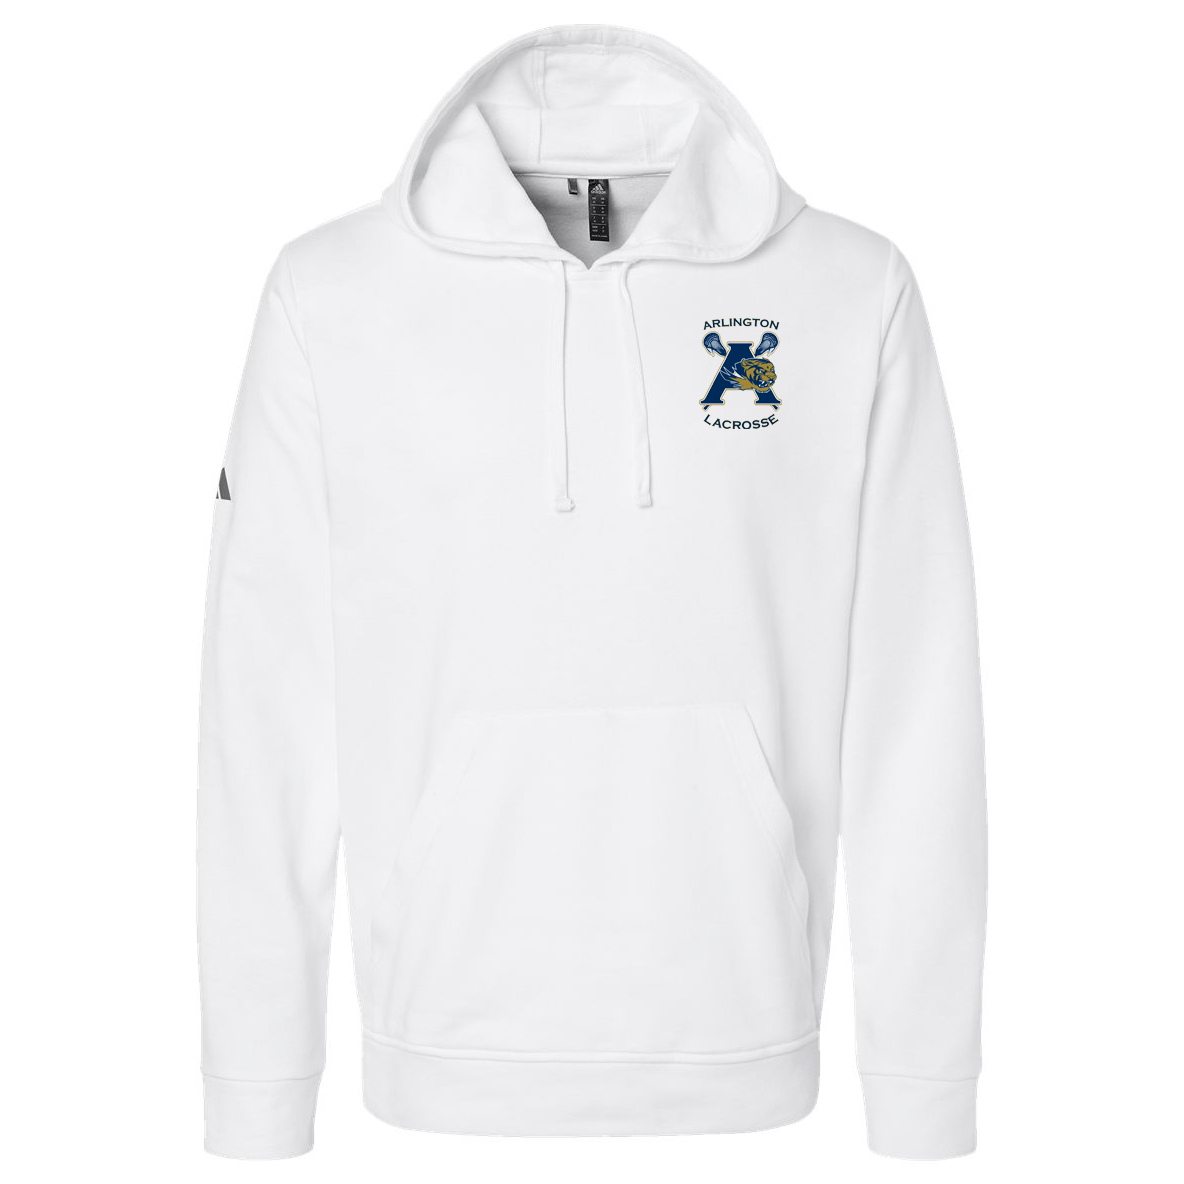 Arlington Lacrosse Adidas Fleece Hooded Sweatshirt